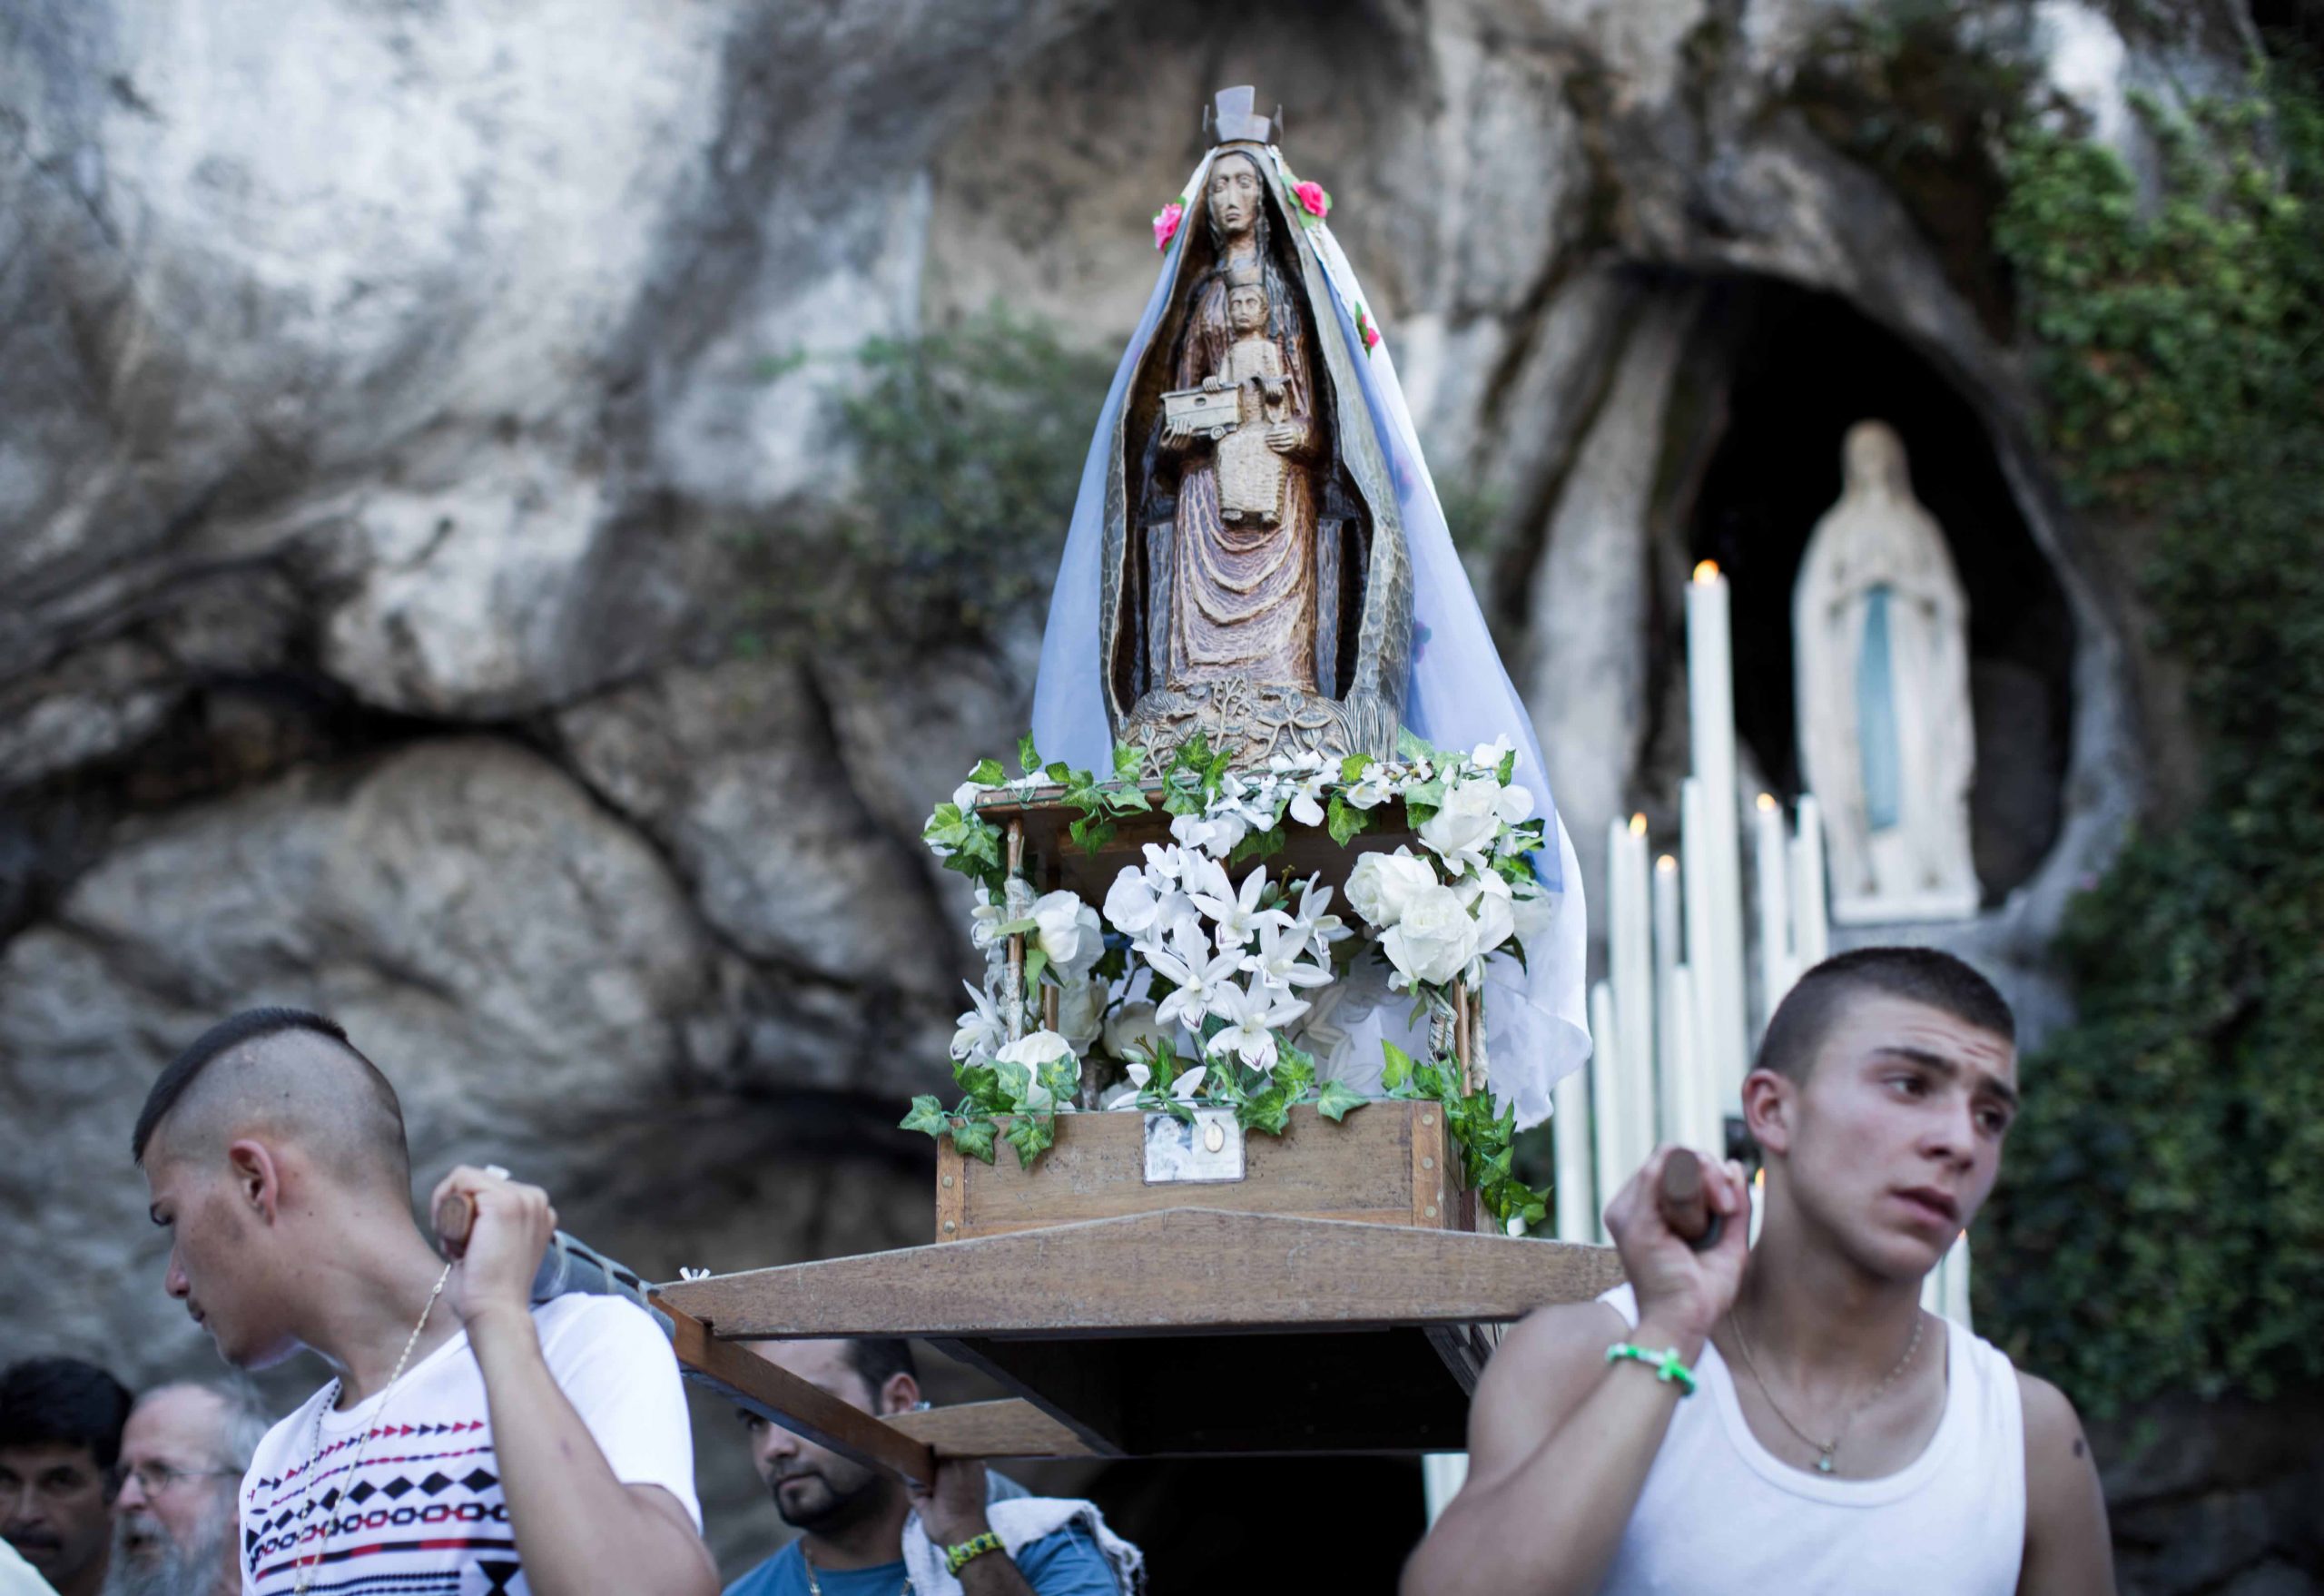 Arriva a Sansepolcro “Lourdes” il documentario di Thierry Demaizière e Alban Teurlai